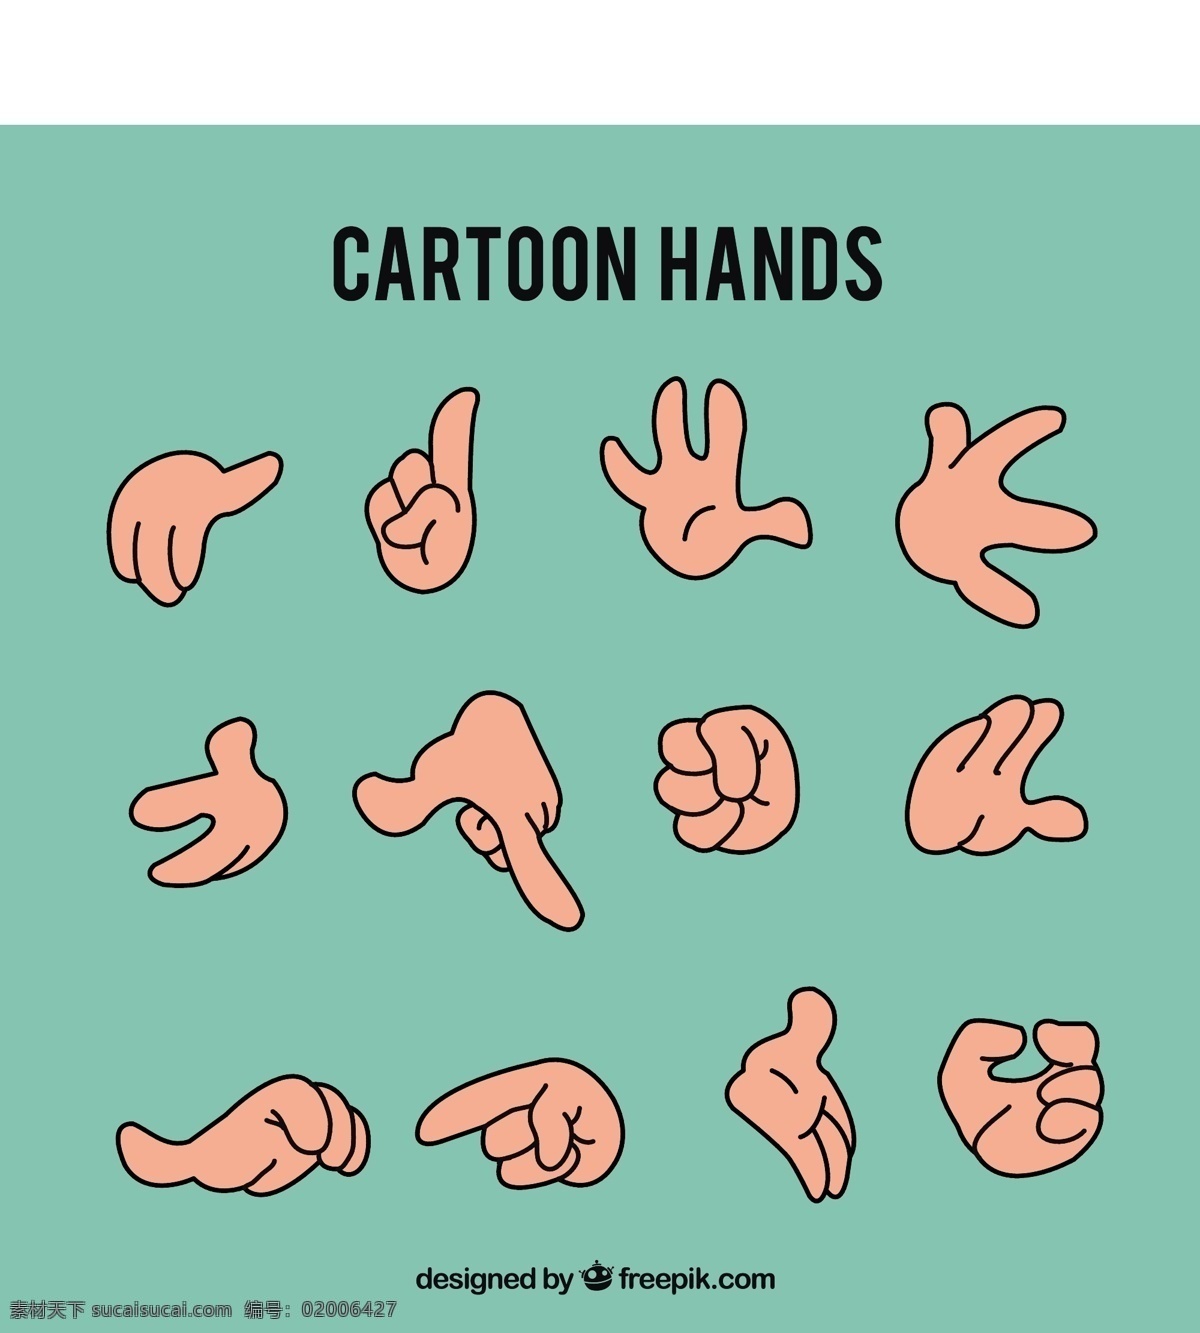 手包图纸 手 卡通 手画 符号 交流 绘画 语言 表达 包装 草图 身体零件 零件 图画 手语 聋人 手势